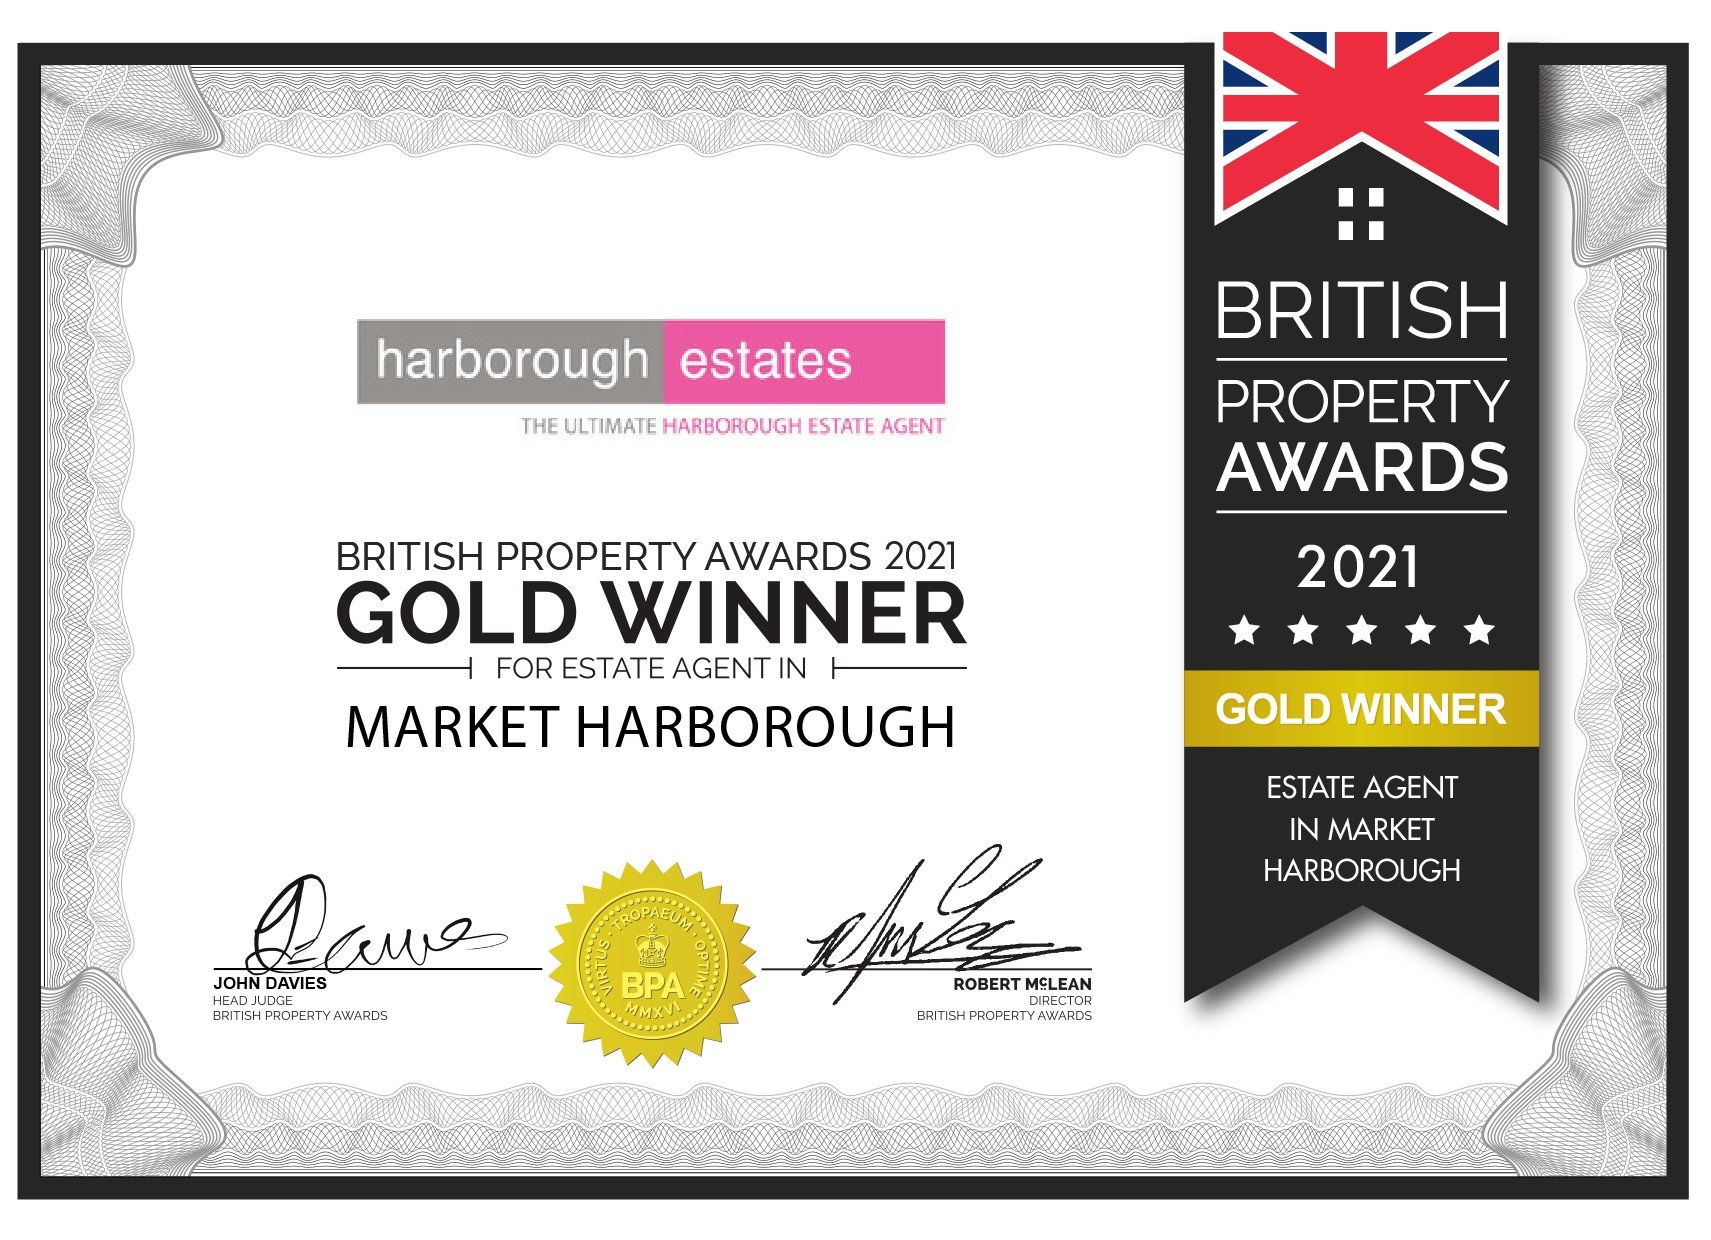 Market Harborough British Property Awards